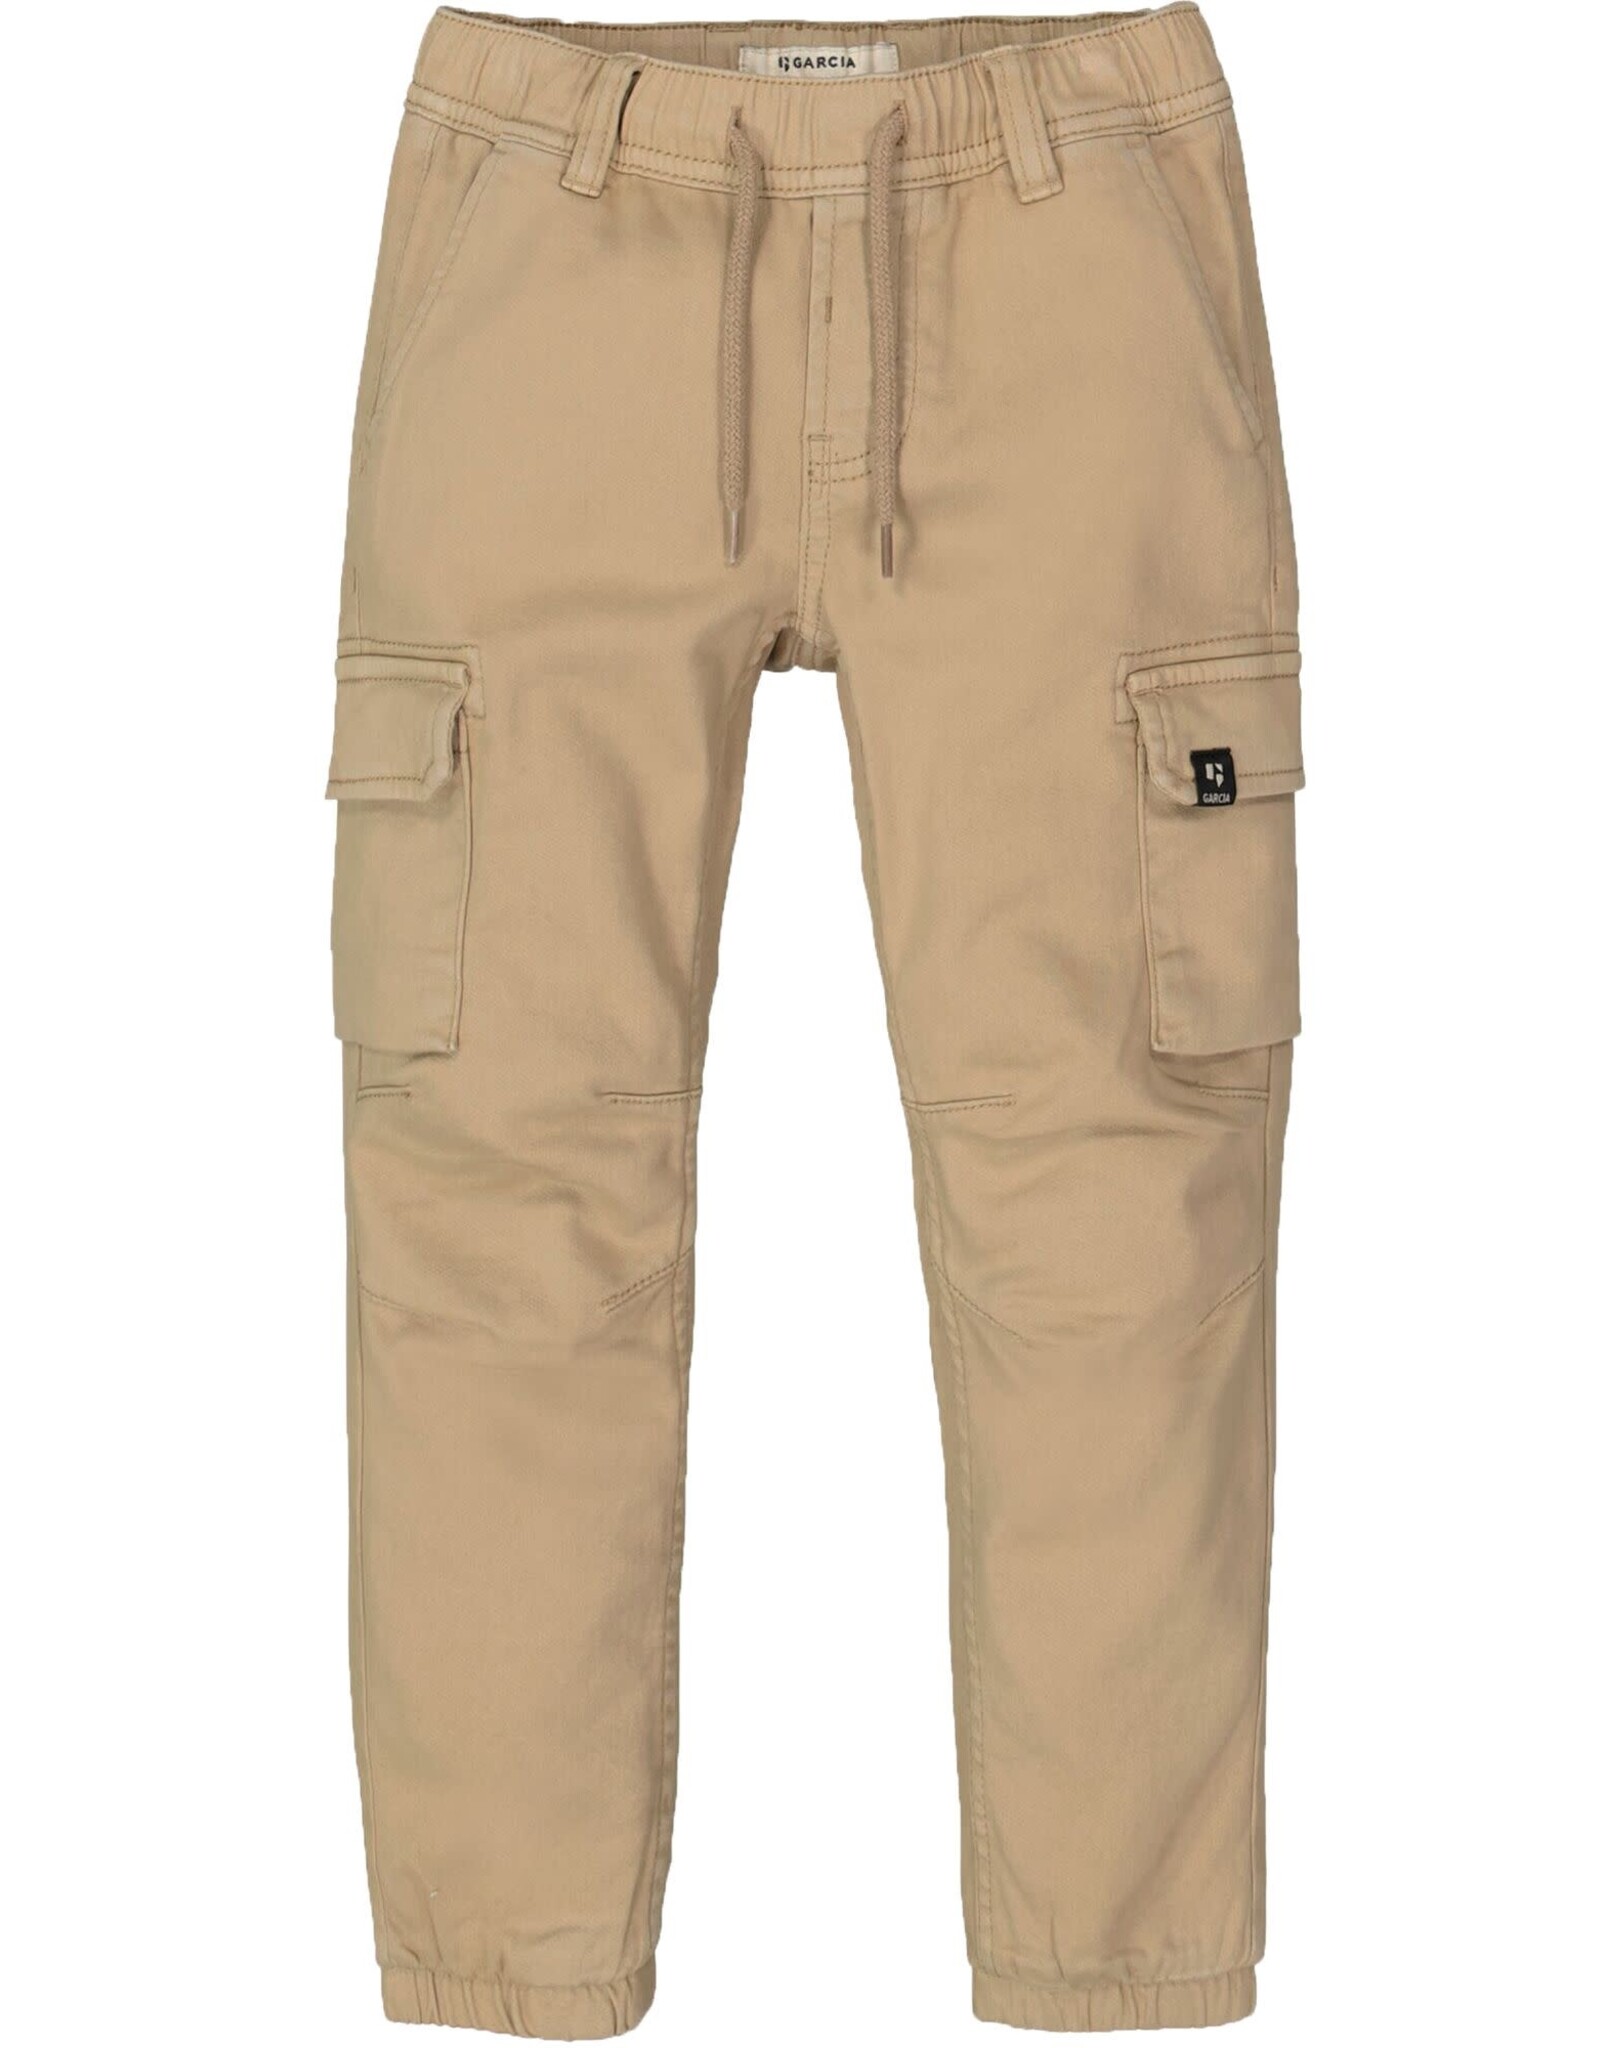 Garcia Z5029_boys pants, 9736-linen NOS